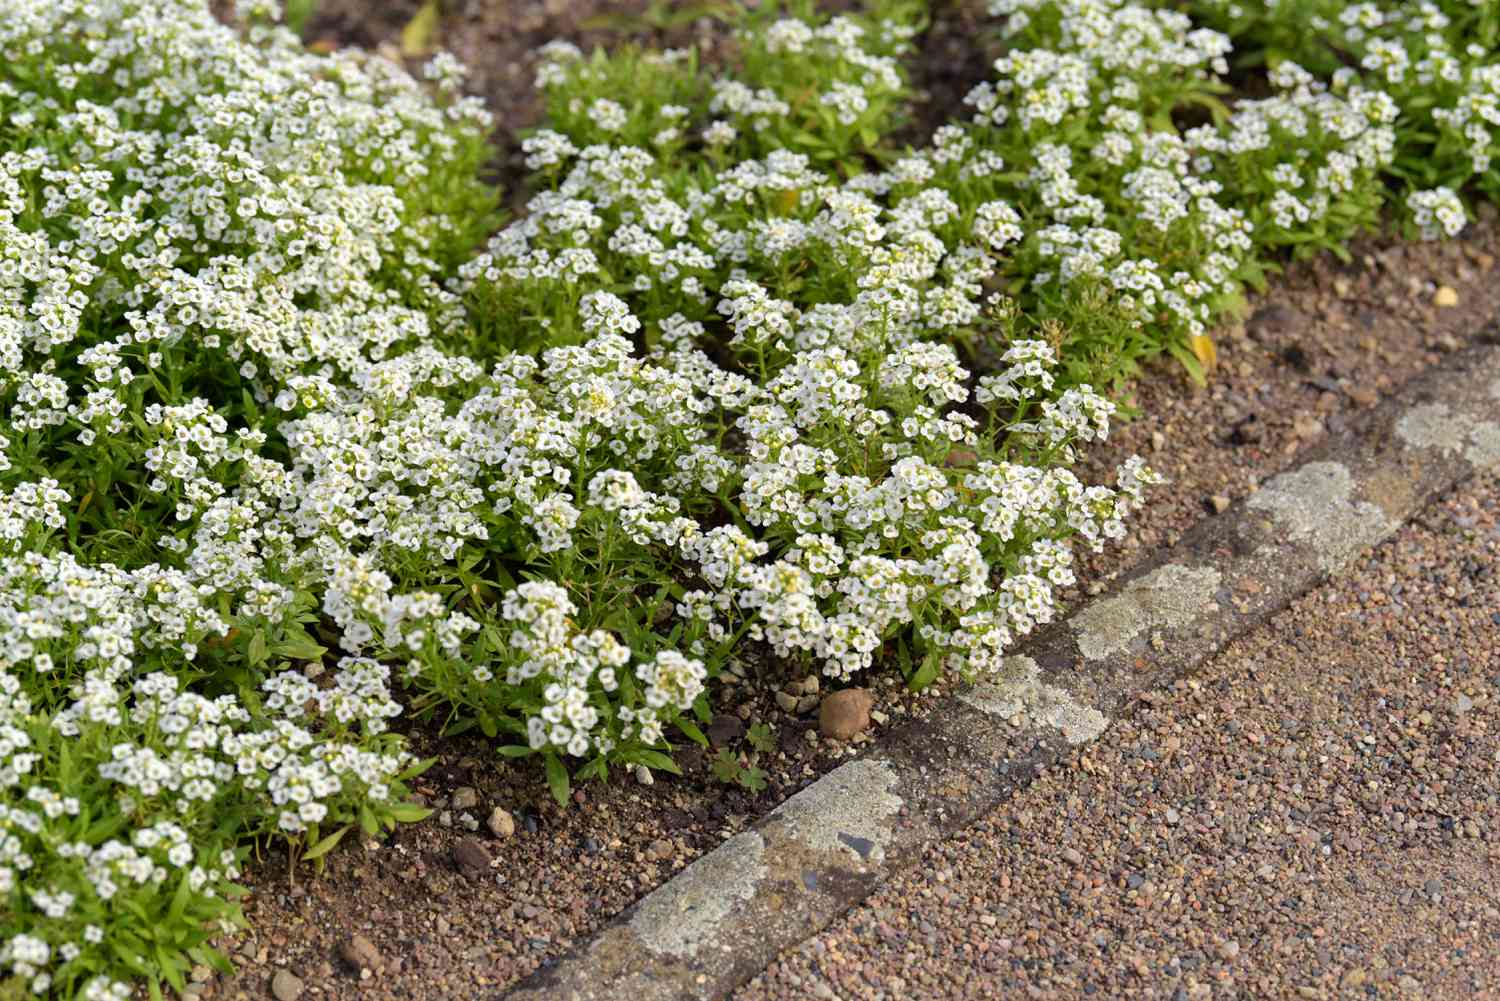 Dulces plantas de alyssum con racimos de pequeñas flores blancas a un lado del camino